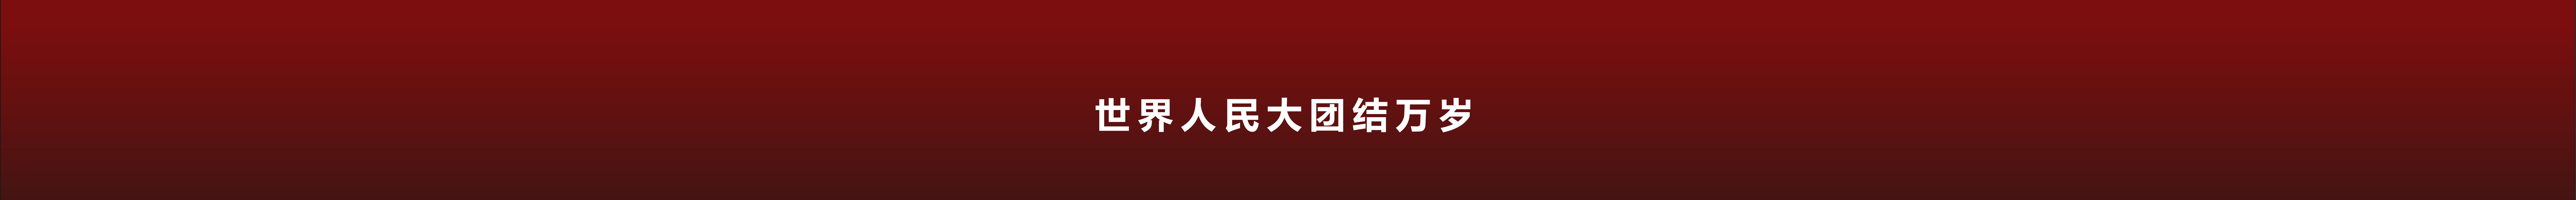 Banner de perfil de Yichao Wang